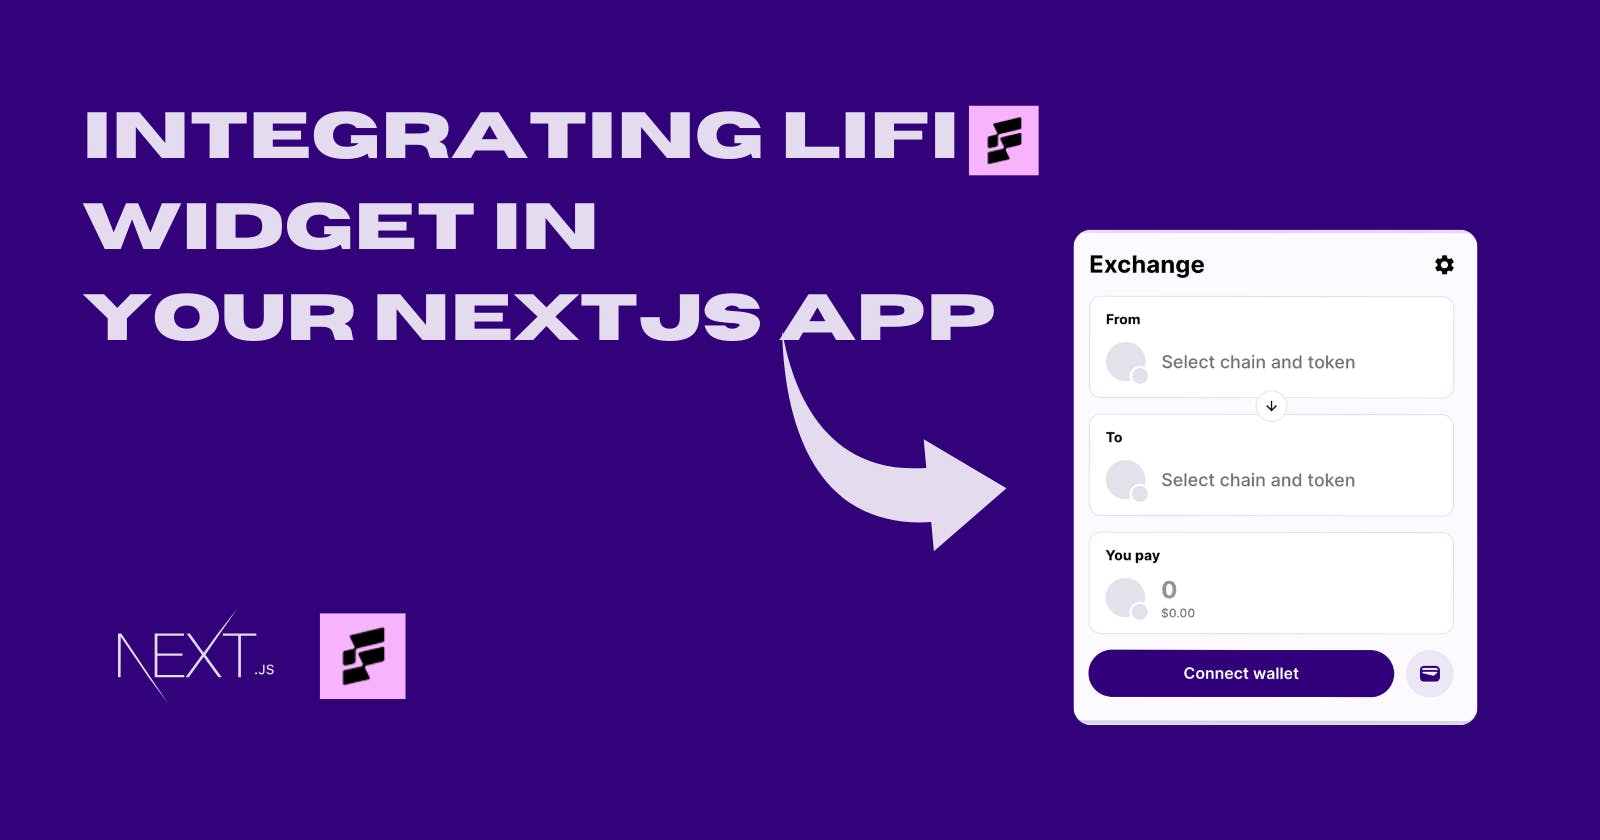 How to integrate LiFi Widget on your NextJS app